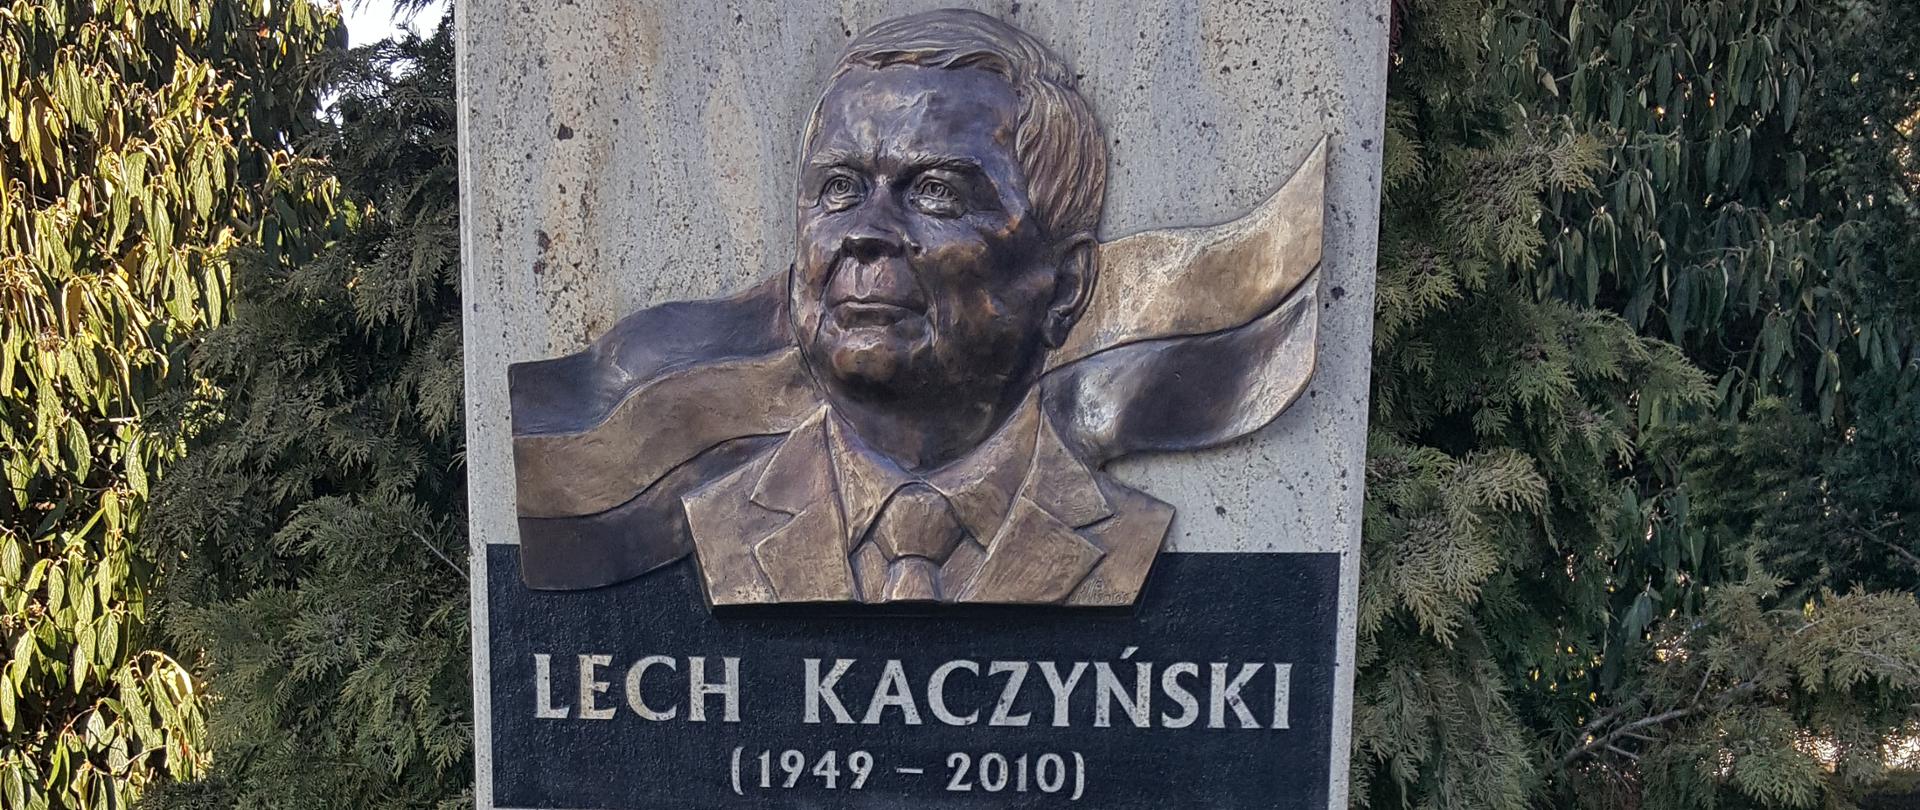 Lech Kaczyński emléktáblájának leleplezése Veszprémben